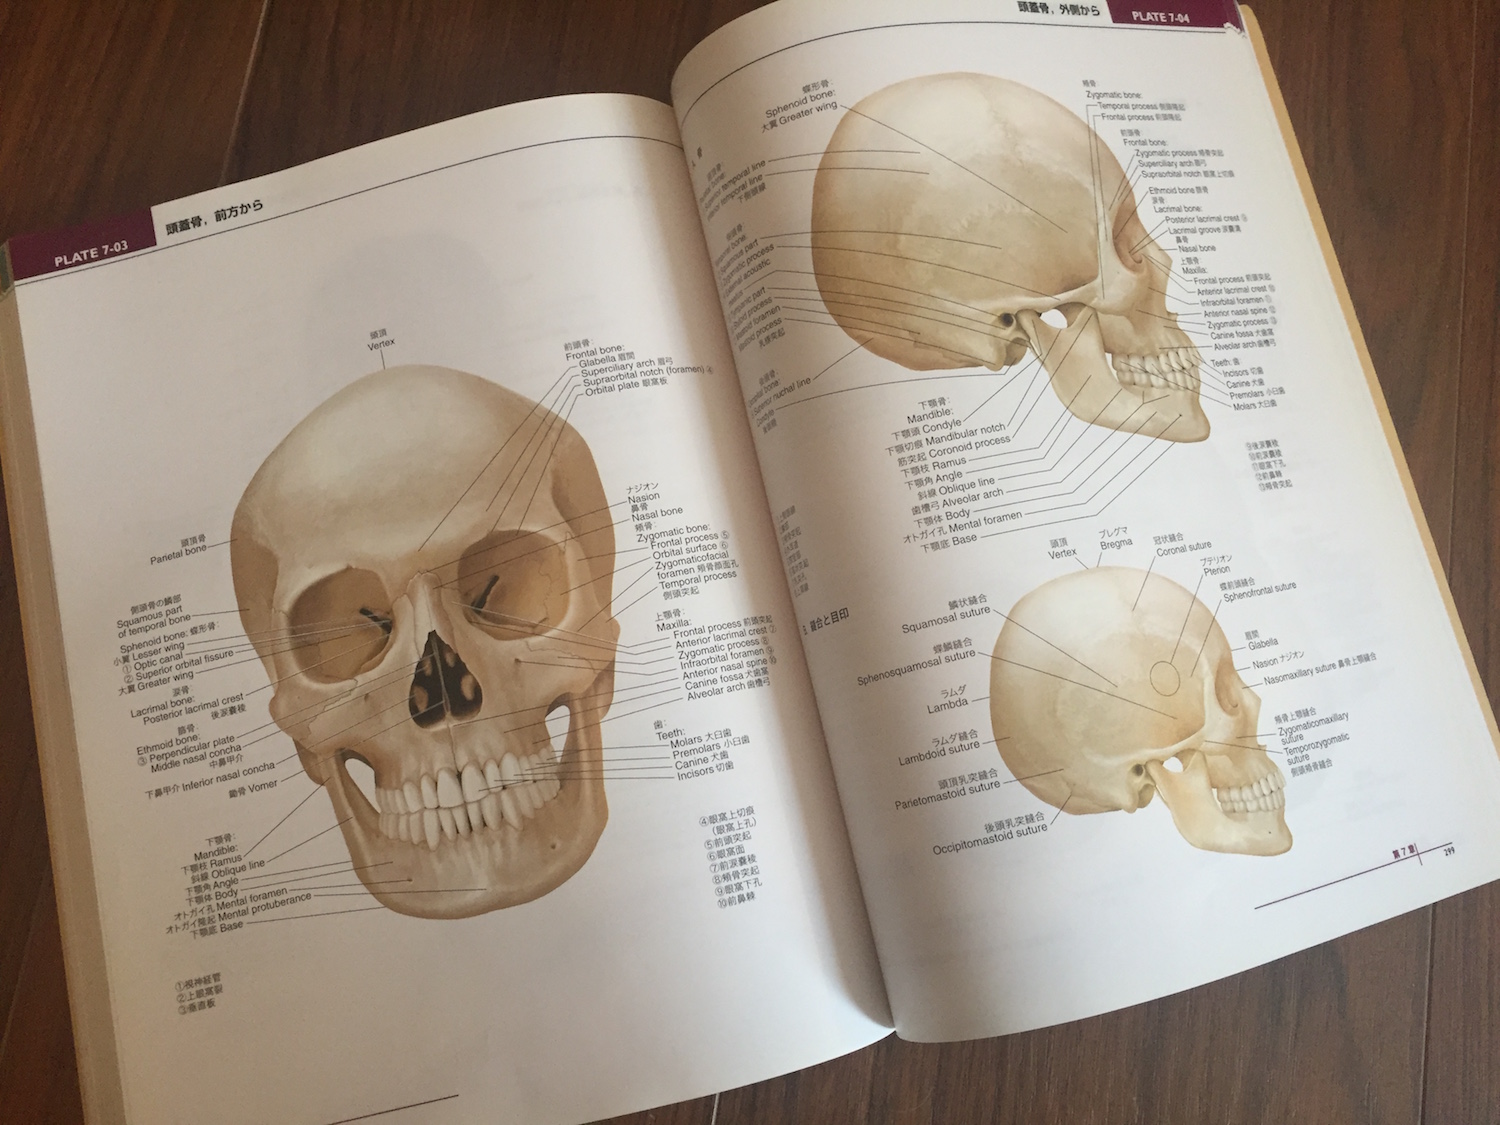 lippincott williams & wilkins atlas of anatomy